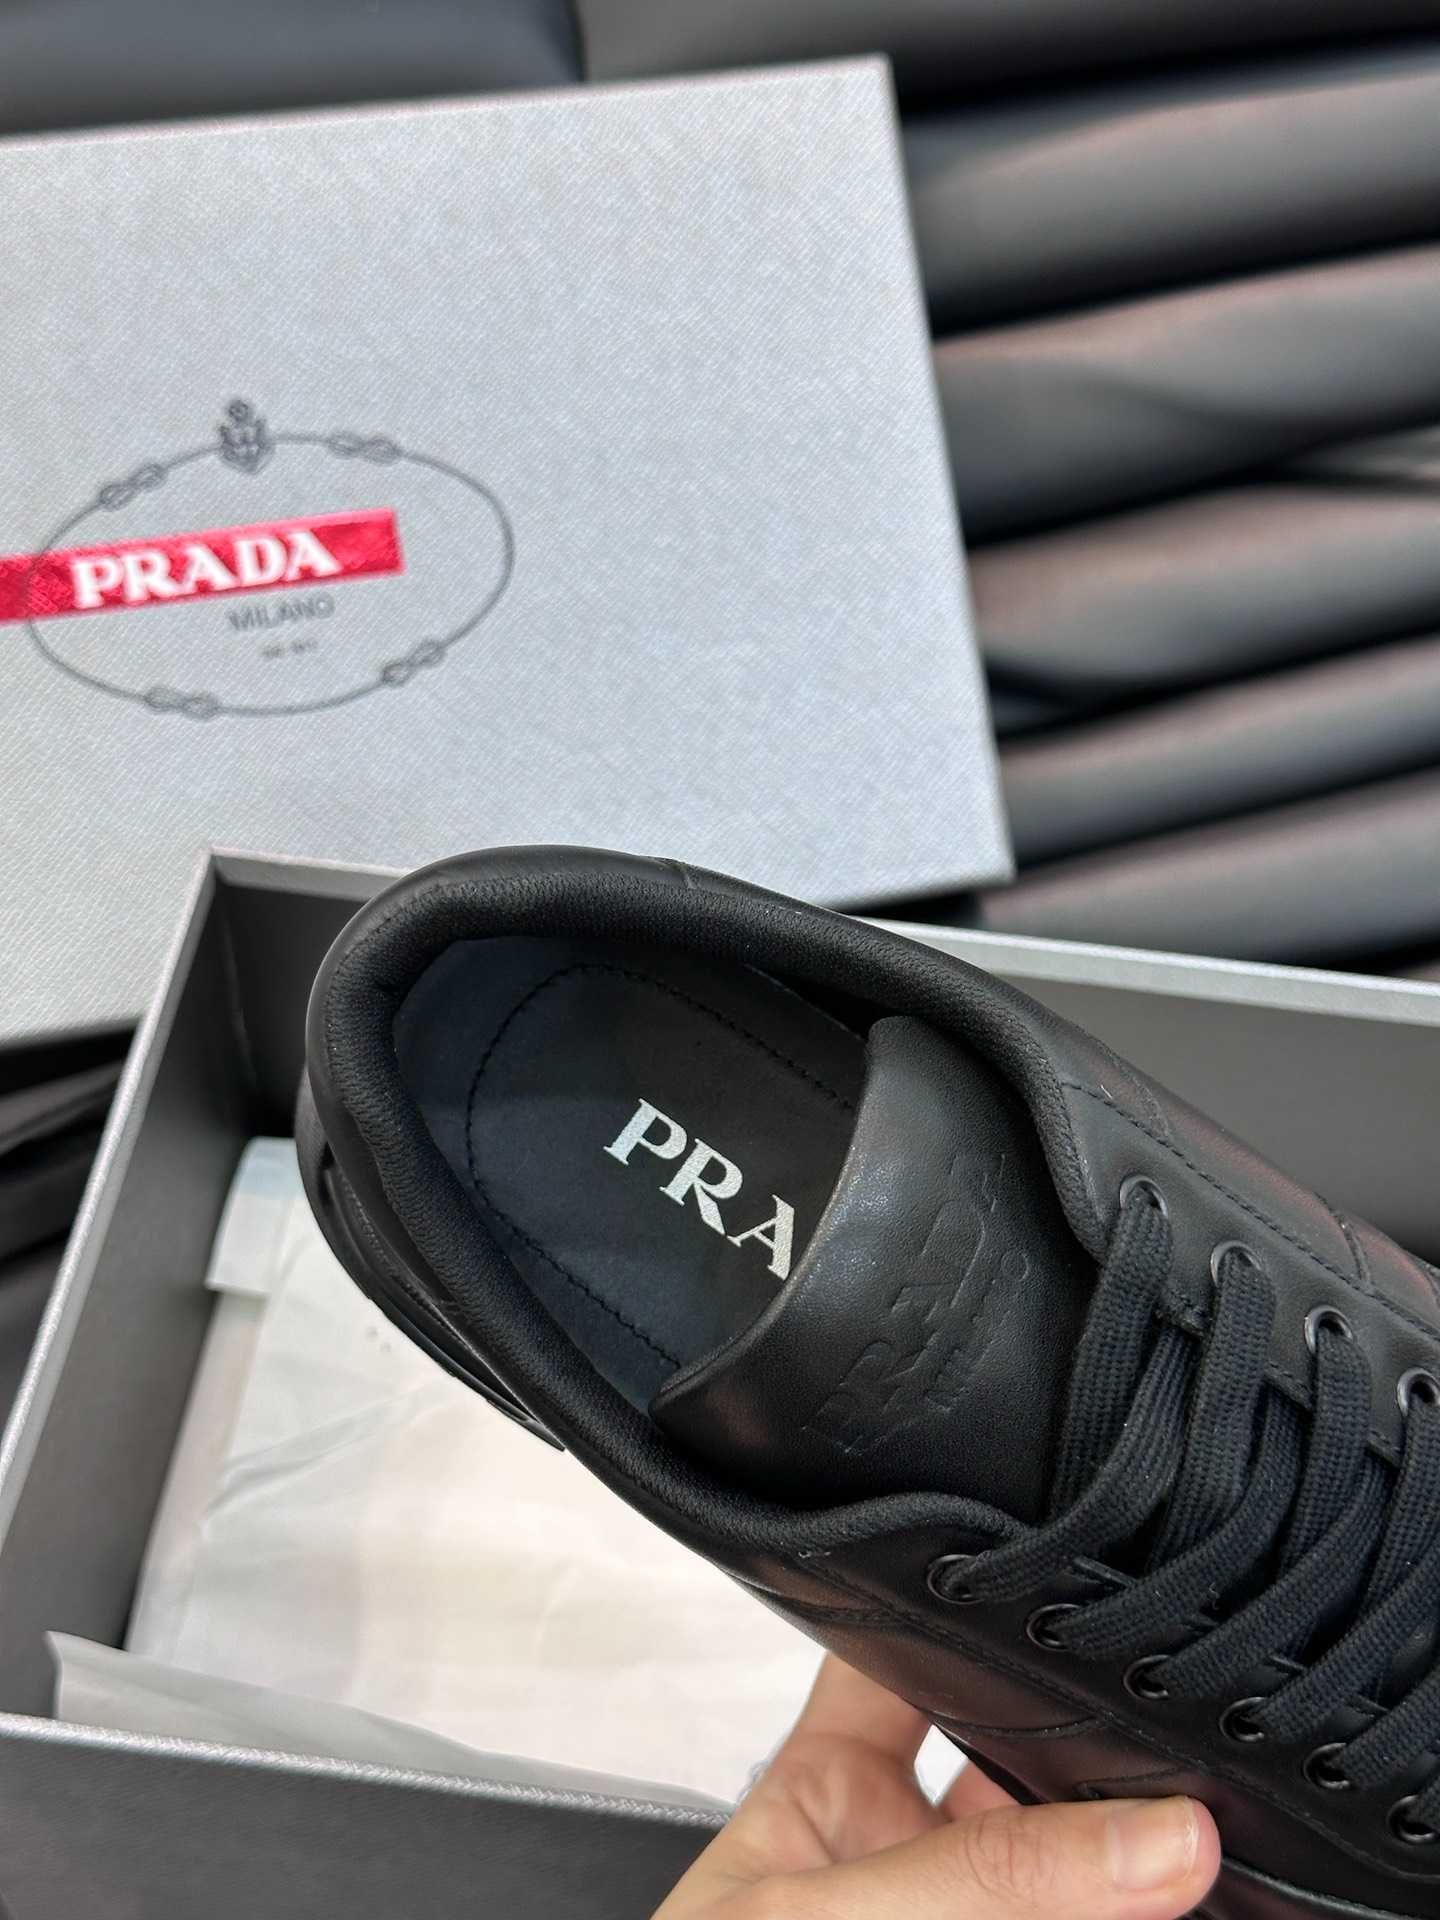 Adidasi Prada Milano - Premium